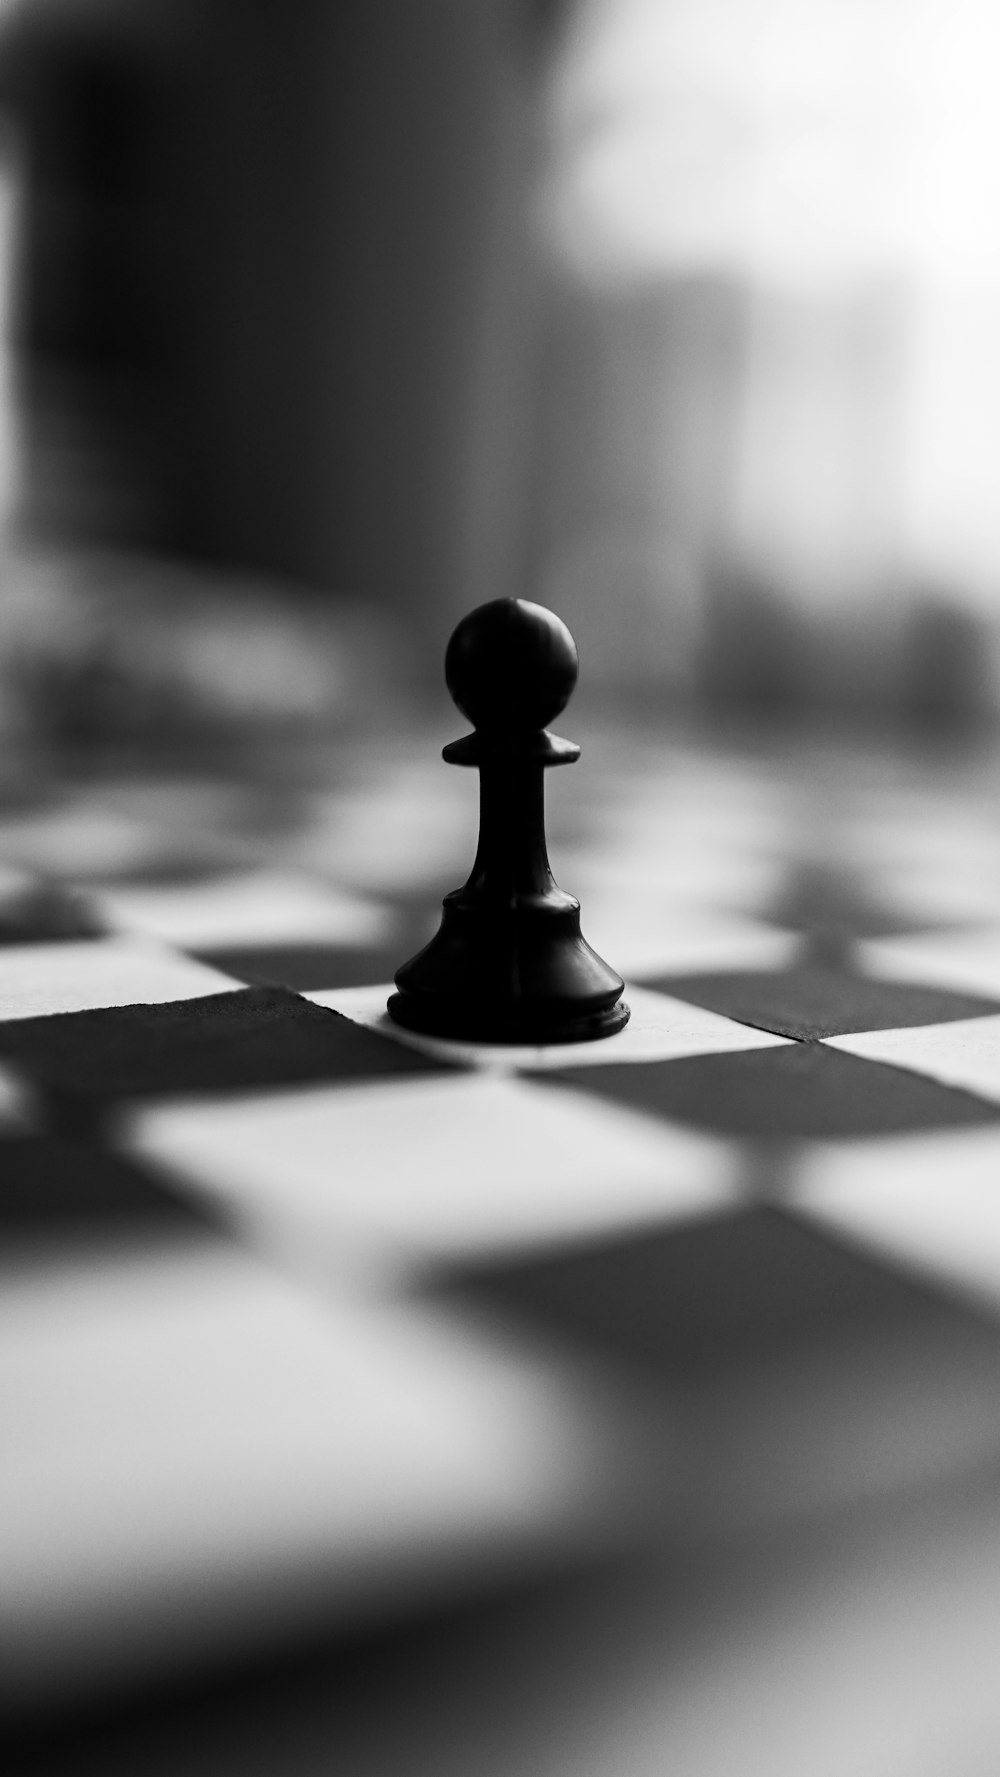 白と黒の市松模様のテキスタイルに黒のチェスの駒